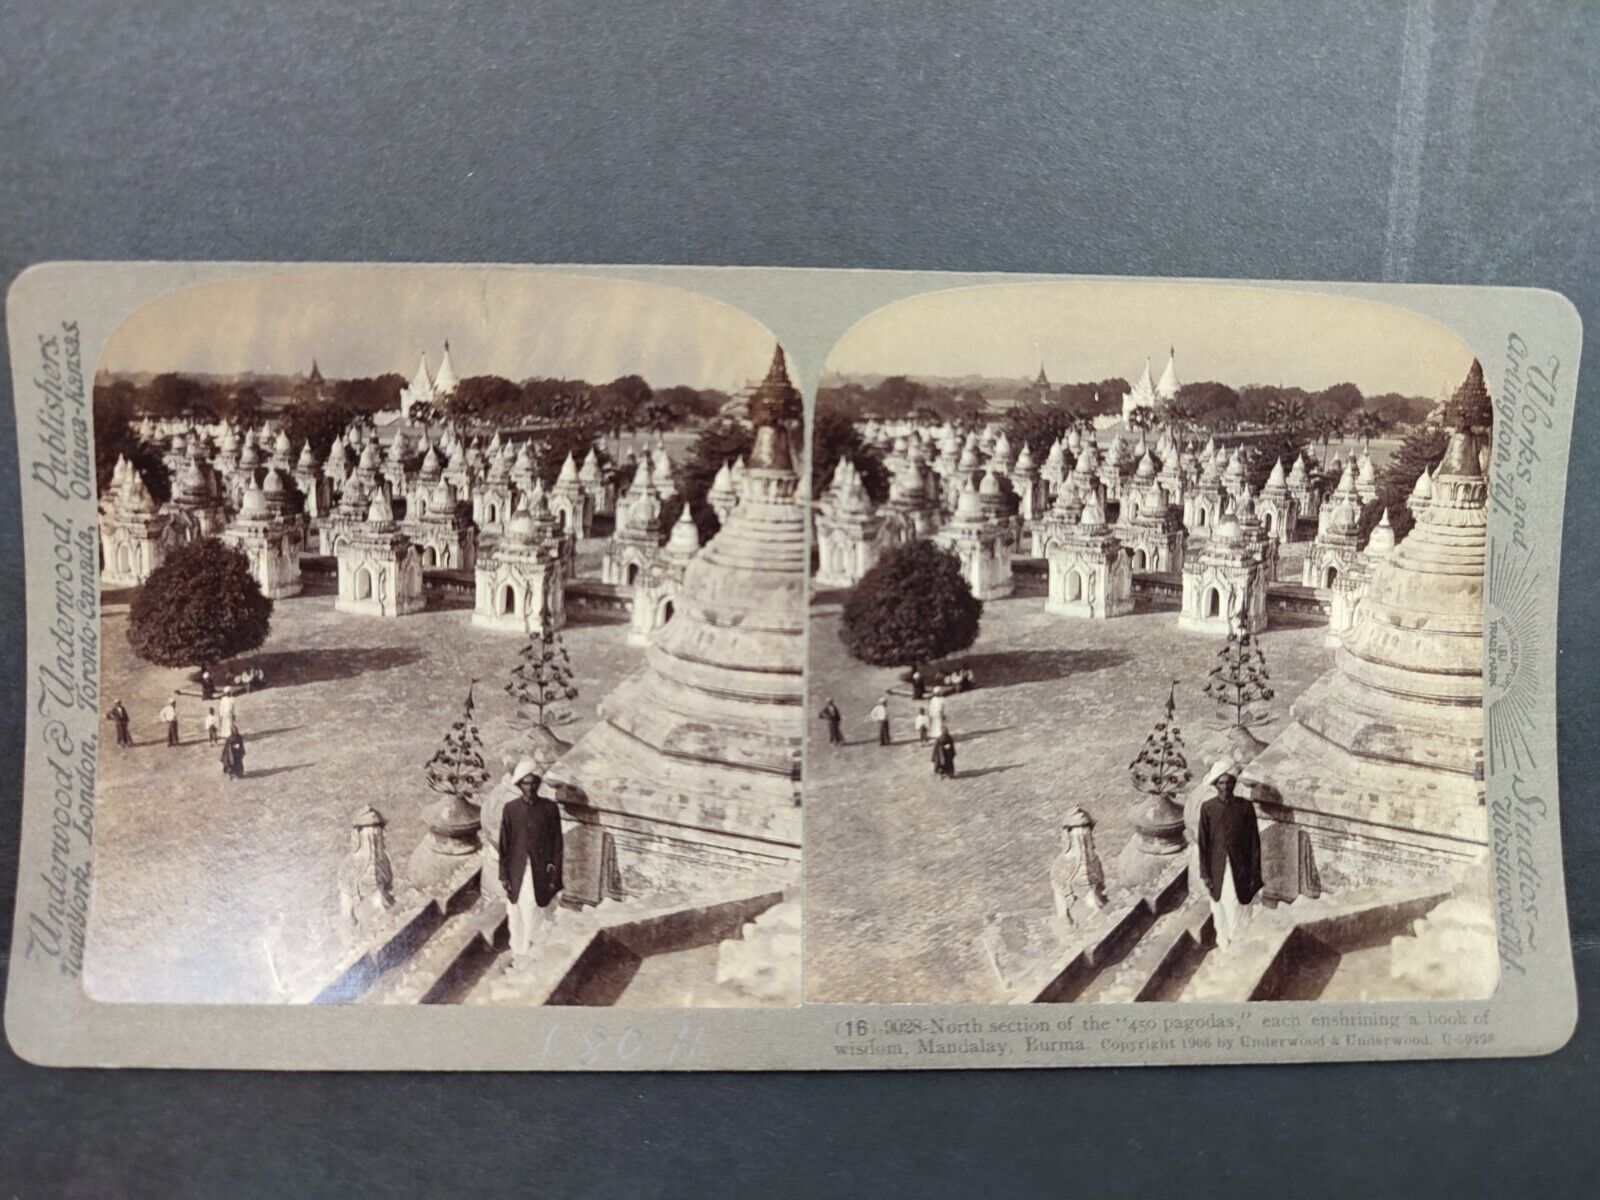 Antique Stereoscope View Card 1906 450 pagodas, Mandalay, Burma